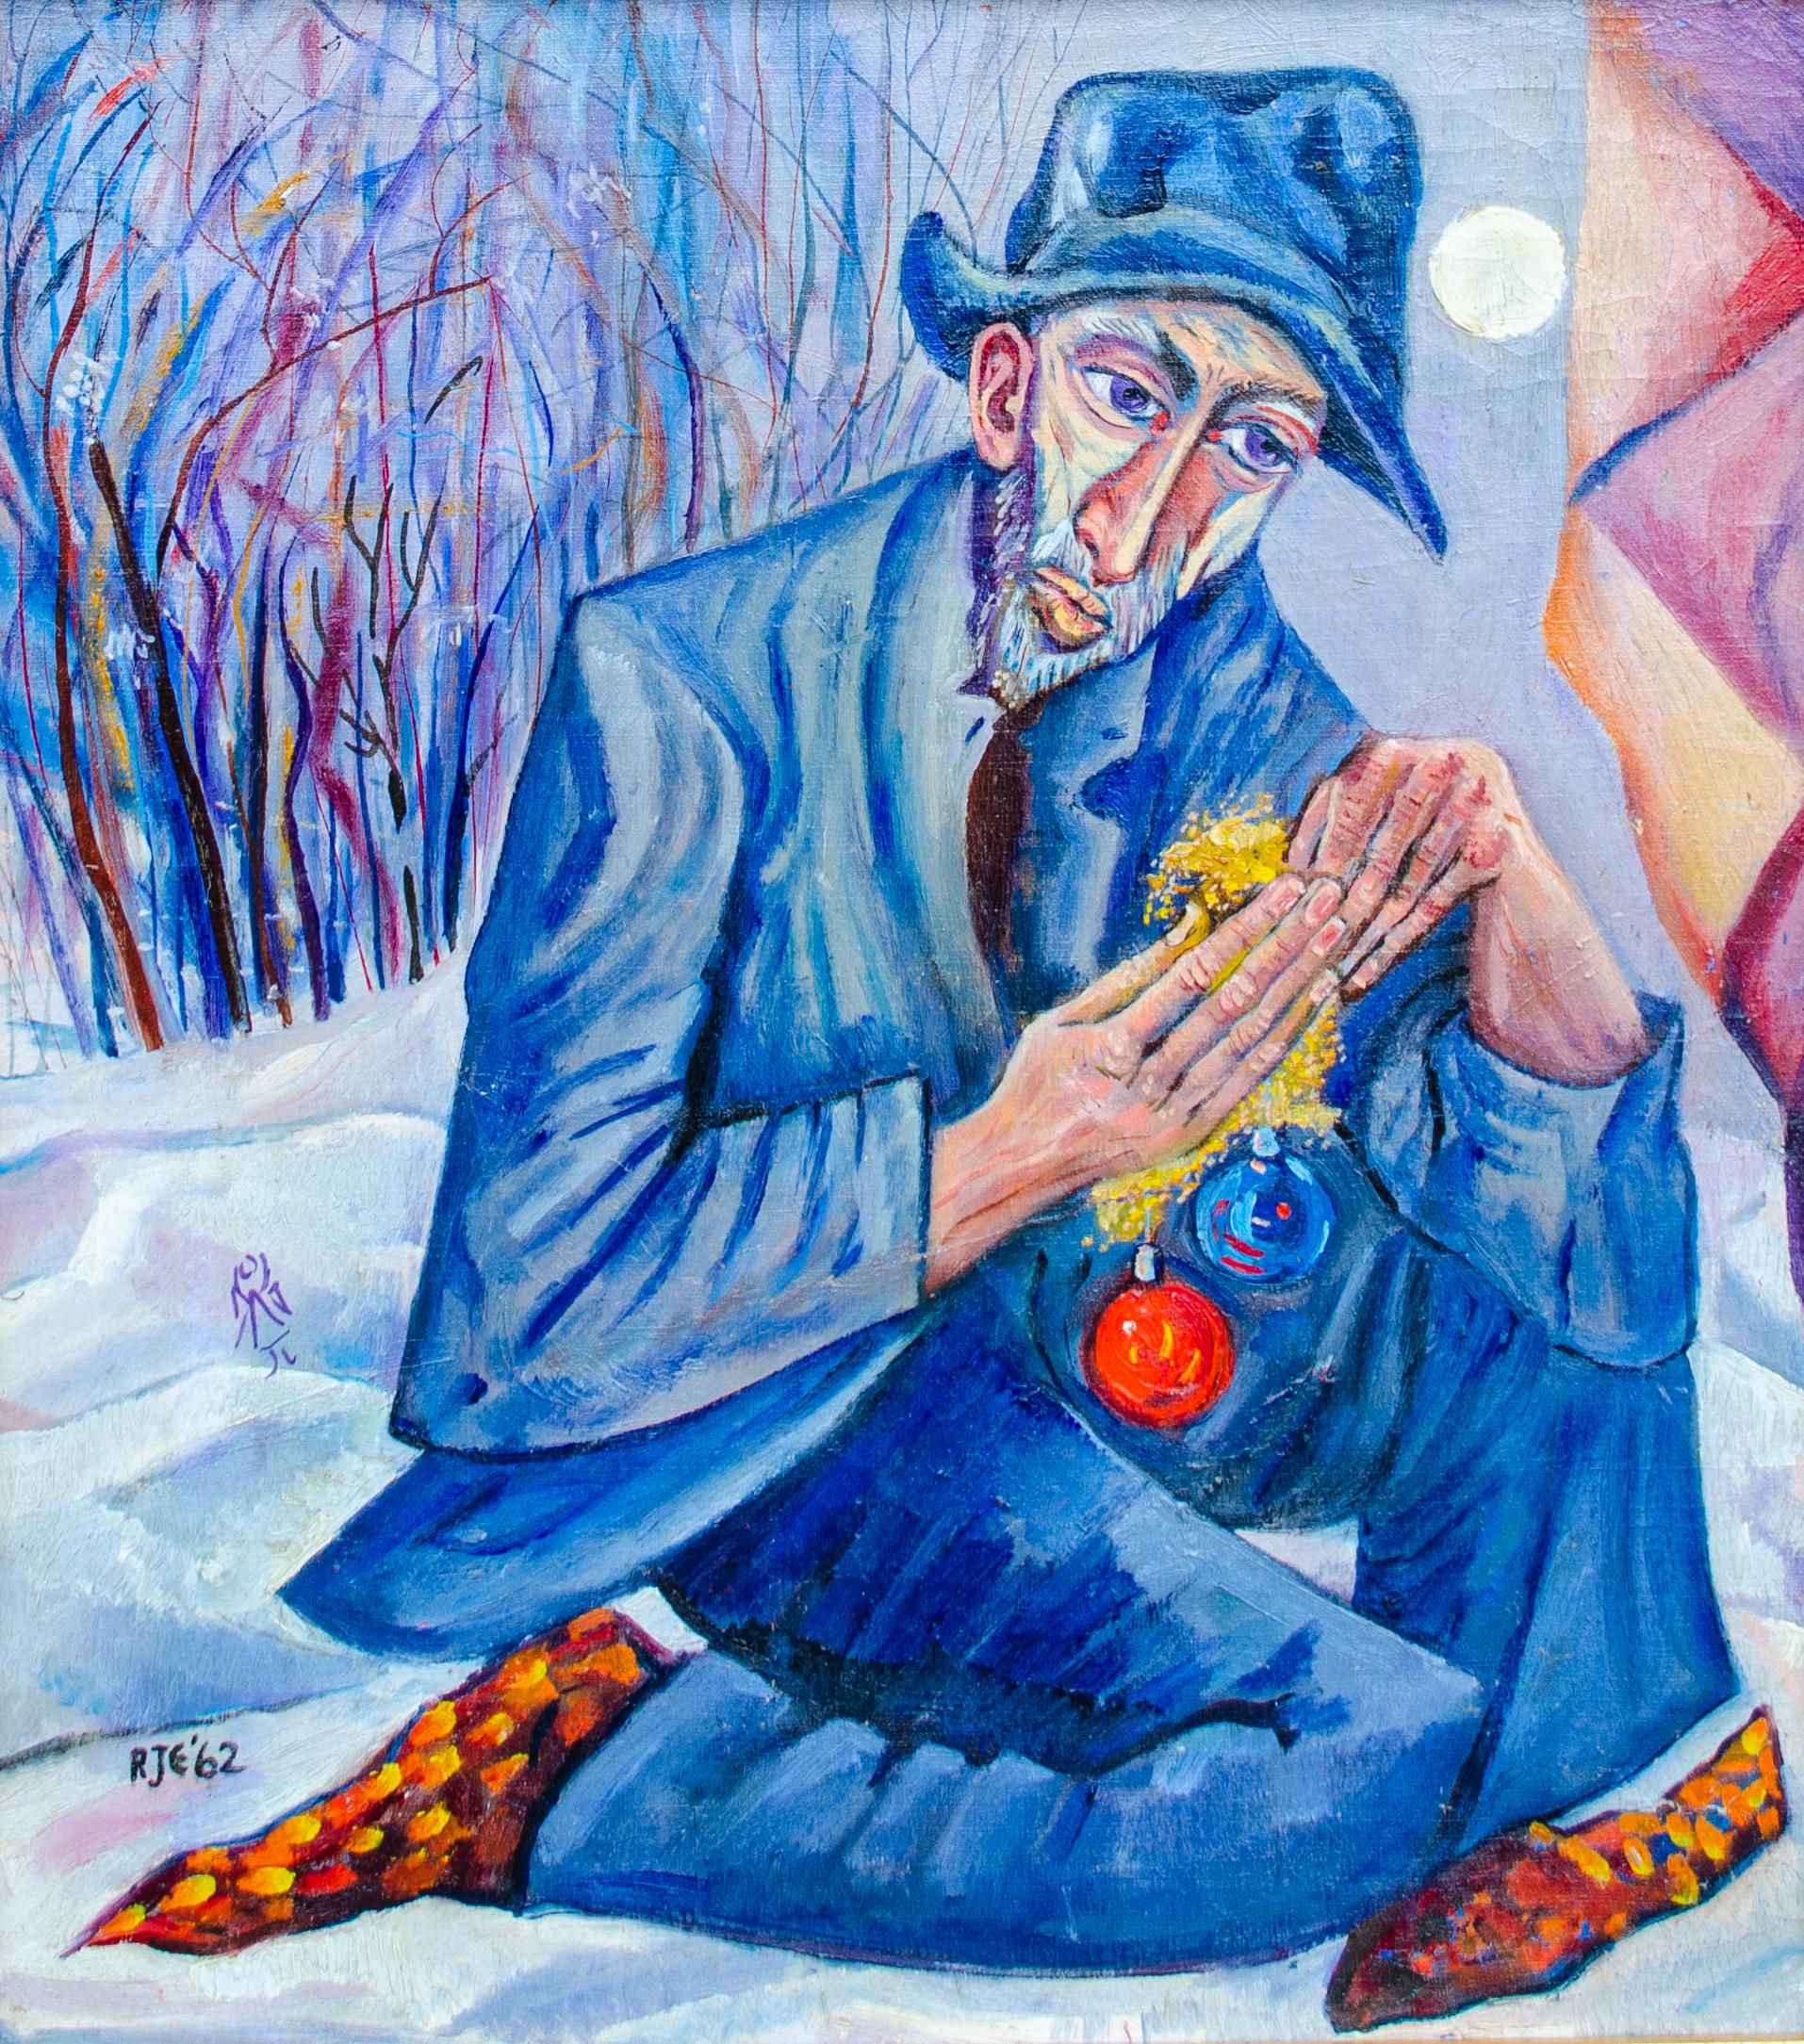 Modernes surrealistisches Wintergemälde von Richard Ericson